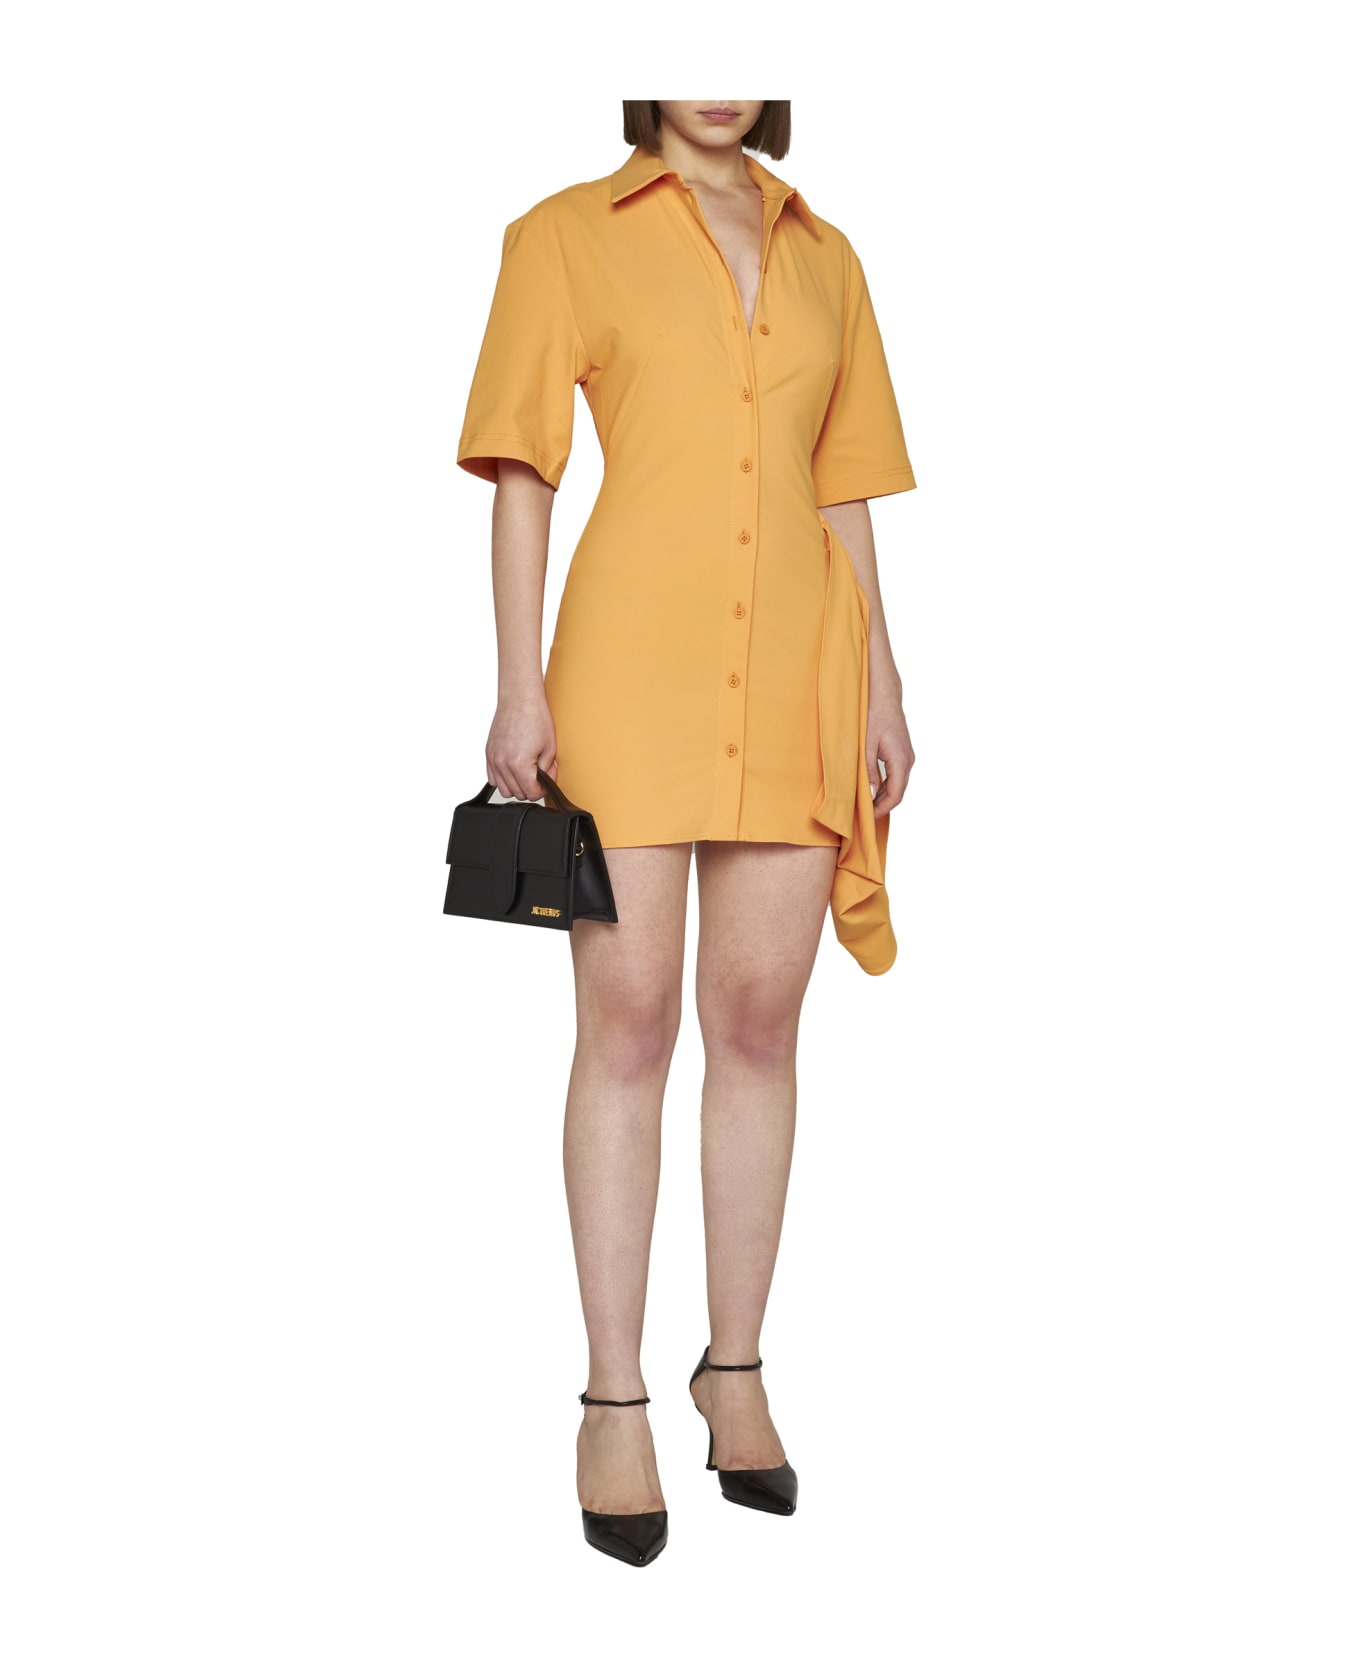 Jacquemus La Robe Camisa Shirt Dress - Orange